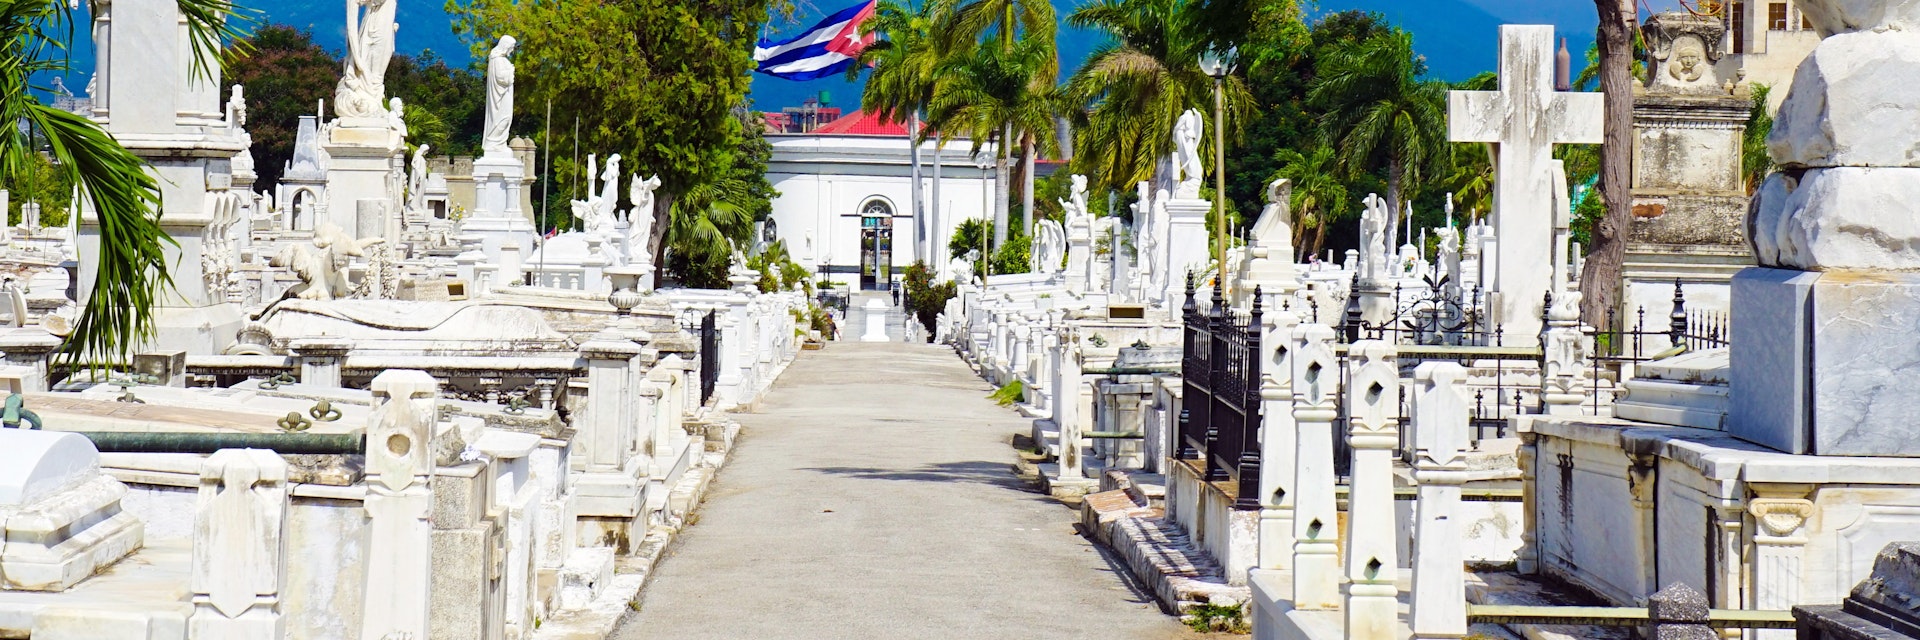 Santa Ifigenia Cemetery in Cuba; Cementerio Santa Ifigenia

 Shutterstock ID 727217770; your: Bridget Brown; gl: 65050; netsuite: Online Editorial; full: POI Image Update